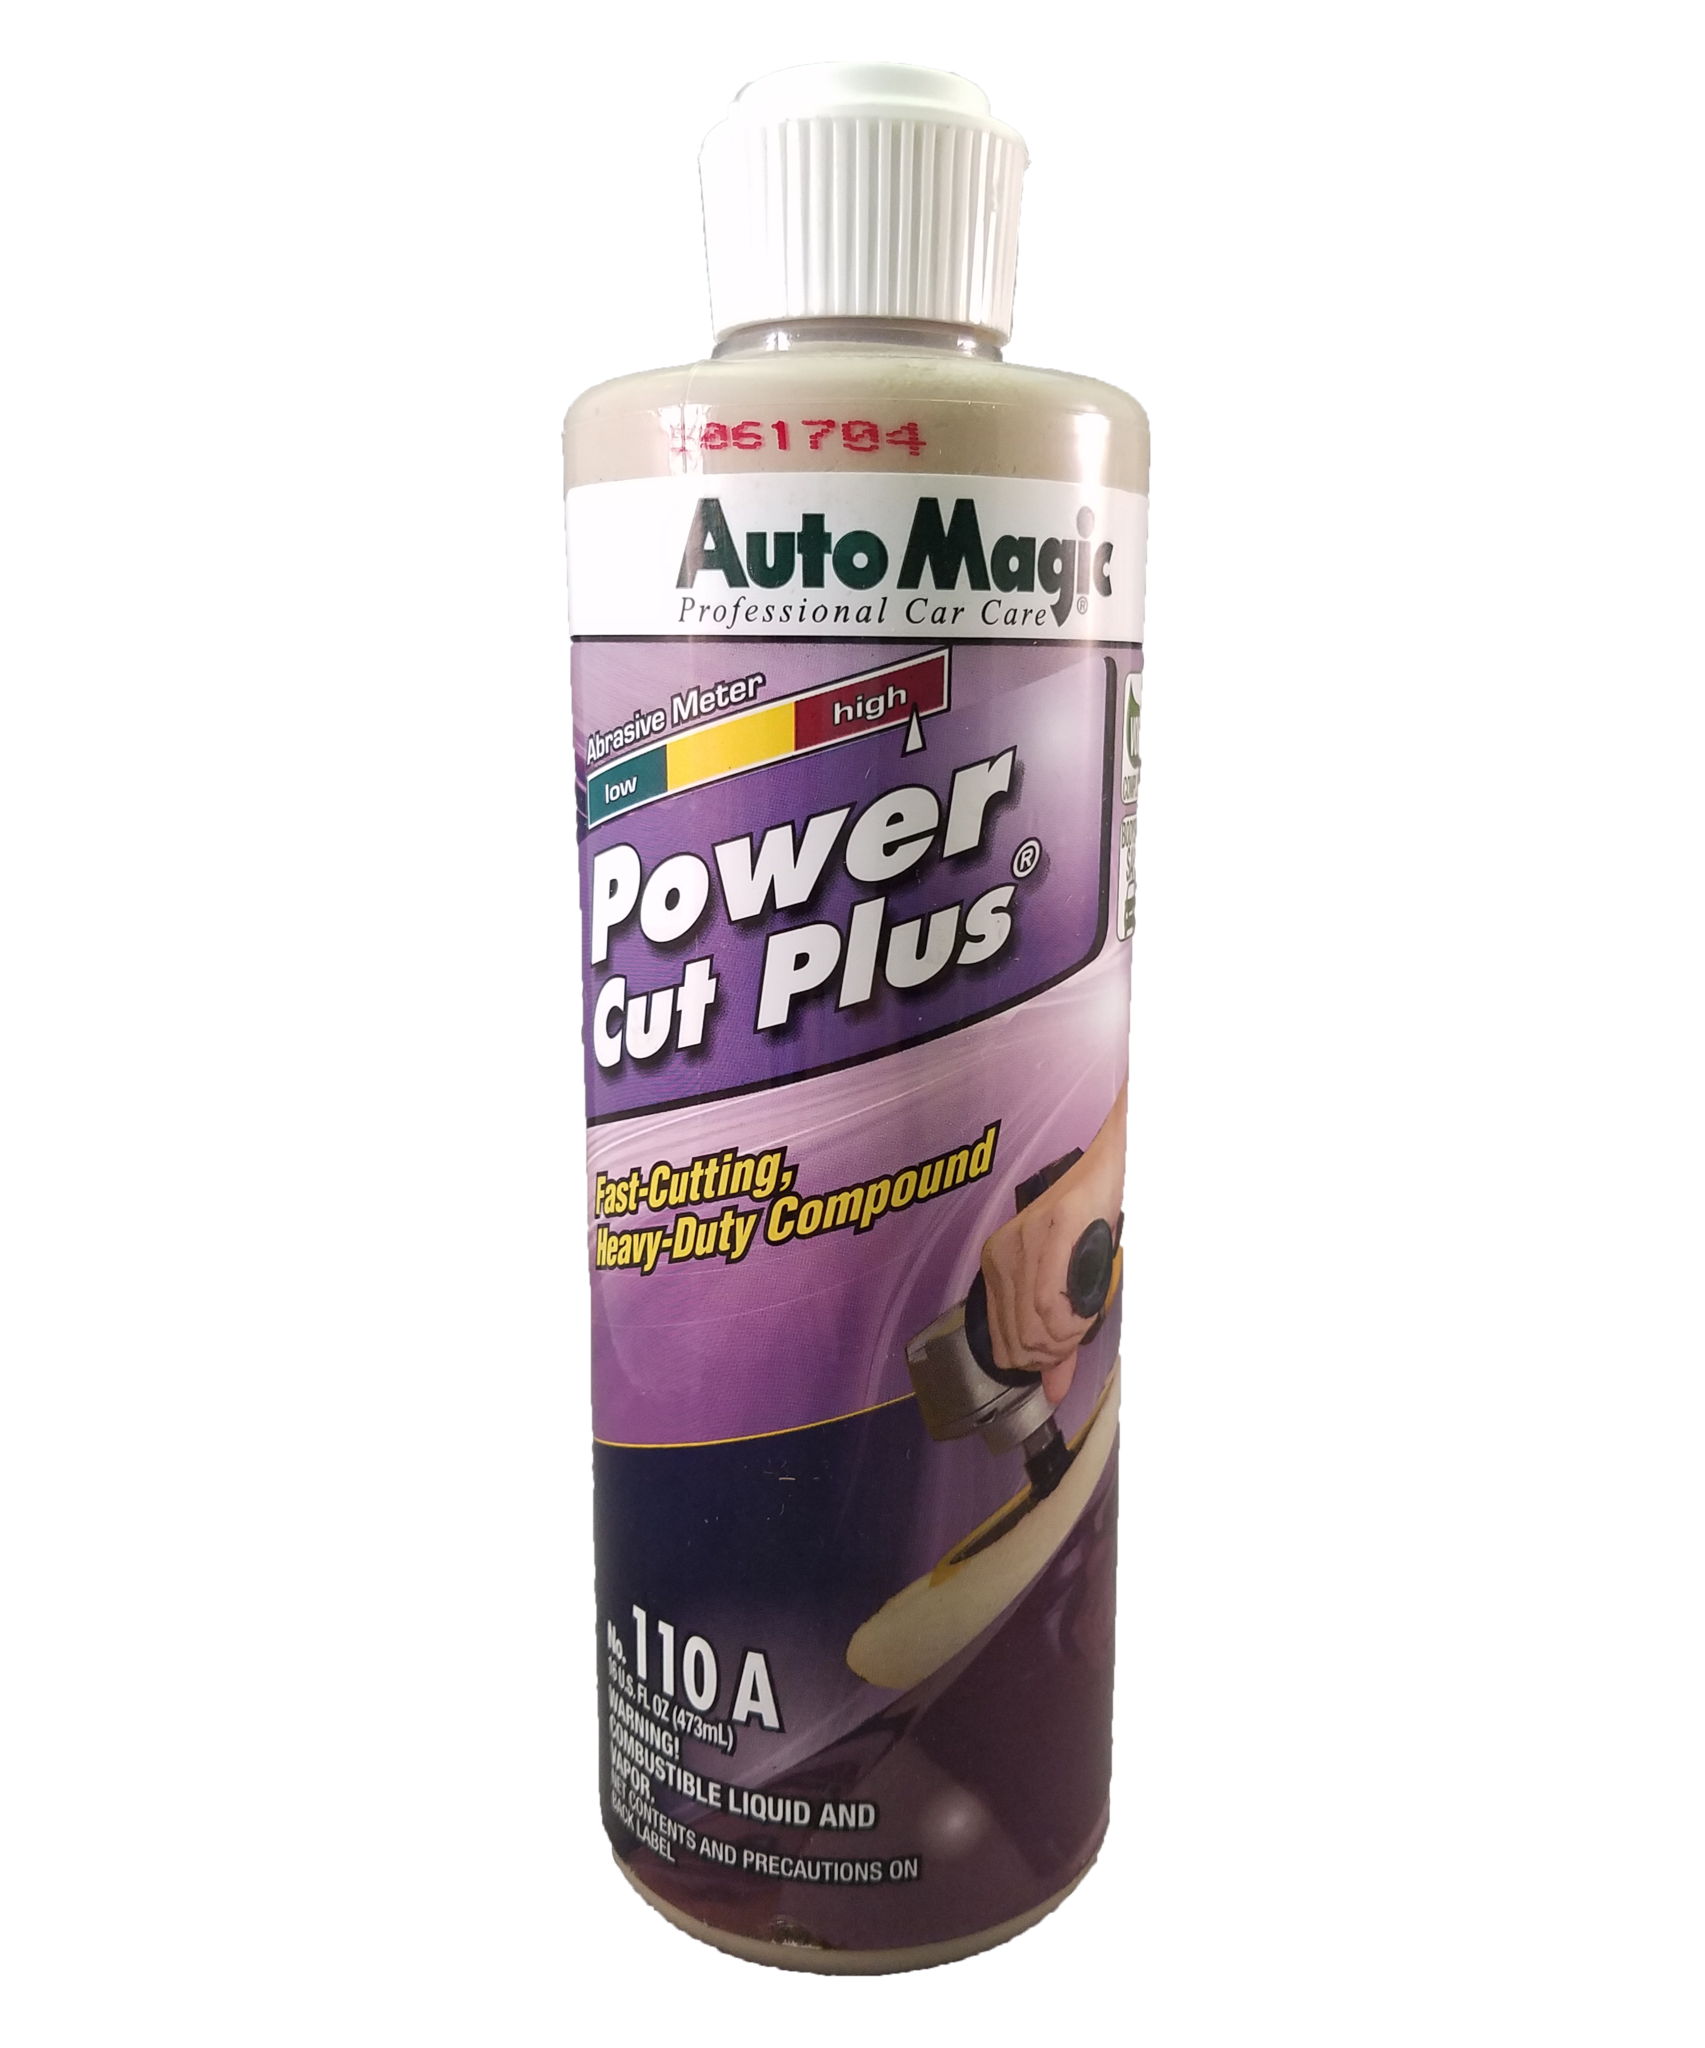 Auto Magic Power Cut Plus detailing compound 16 ounce.